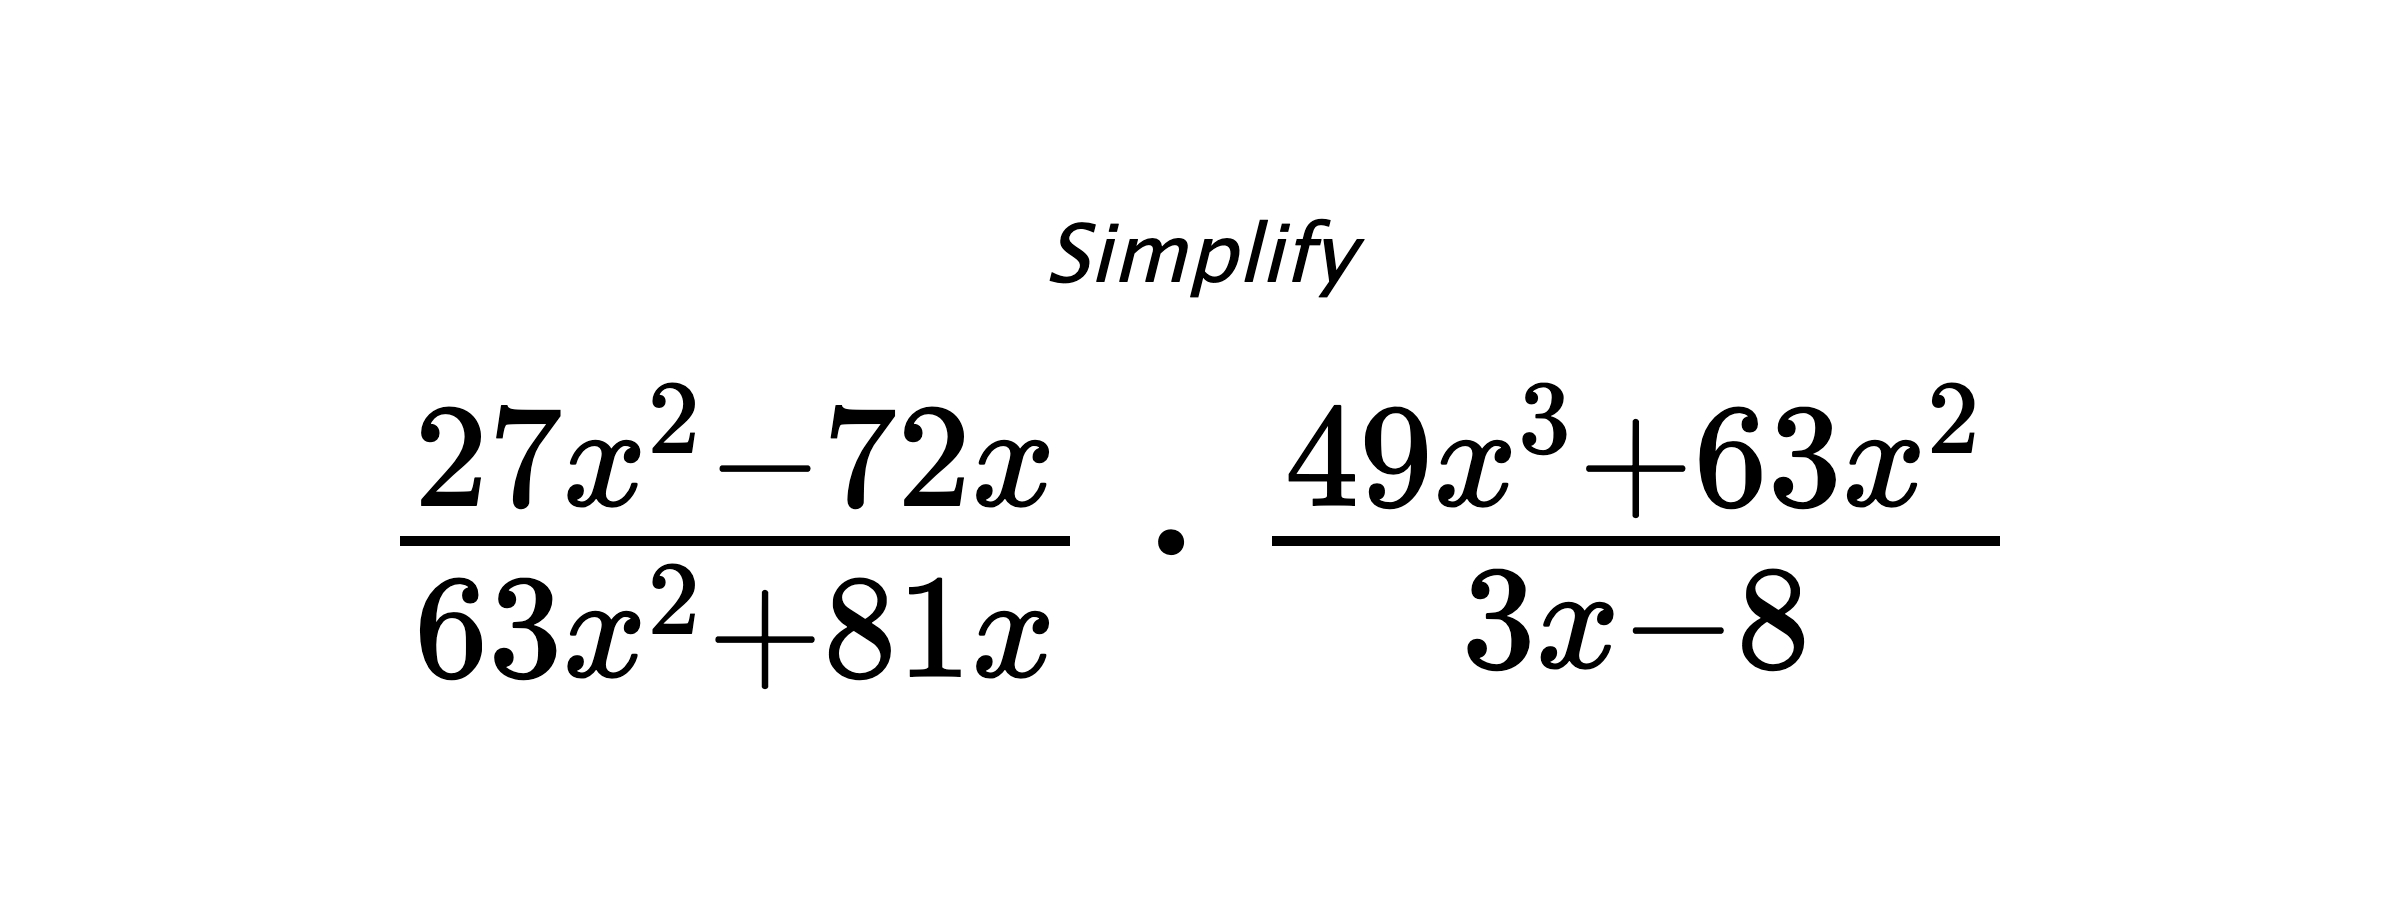 Simplify $ \frac{27x^2-72x}{63x^2+81x} \cdot \frac{49x^3+63x^2}{3x-8} $